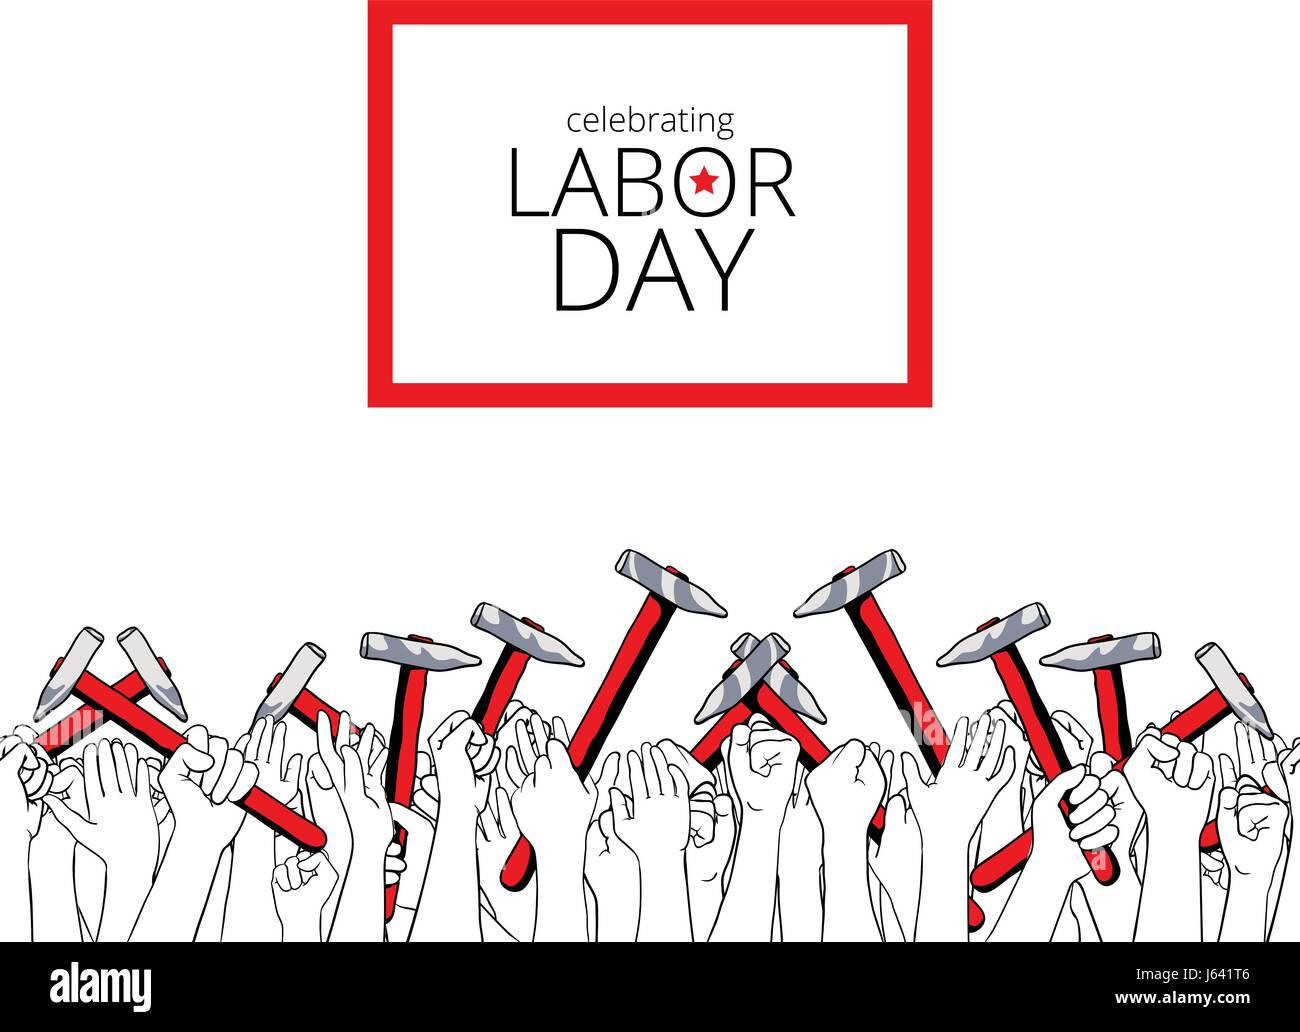 Tag der Arbeit, 4. September 2017 feiern. Grußkarte, auch für Posterdruck geeignet. Menge der Arbeiterinnen mit ihren Armen angehoben halten Hämmer. Hand Stock Vektor